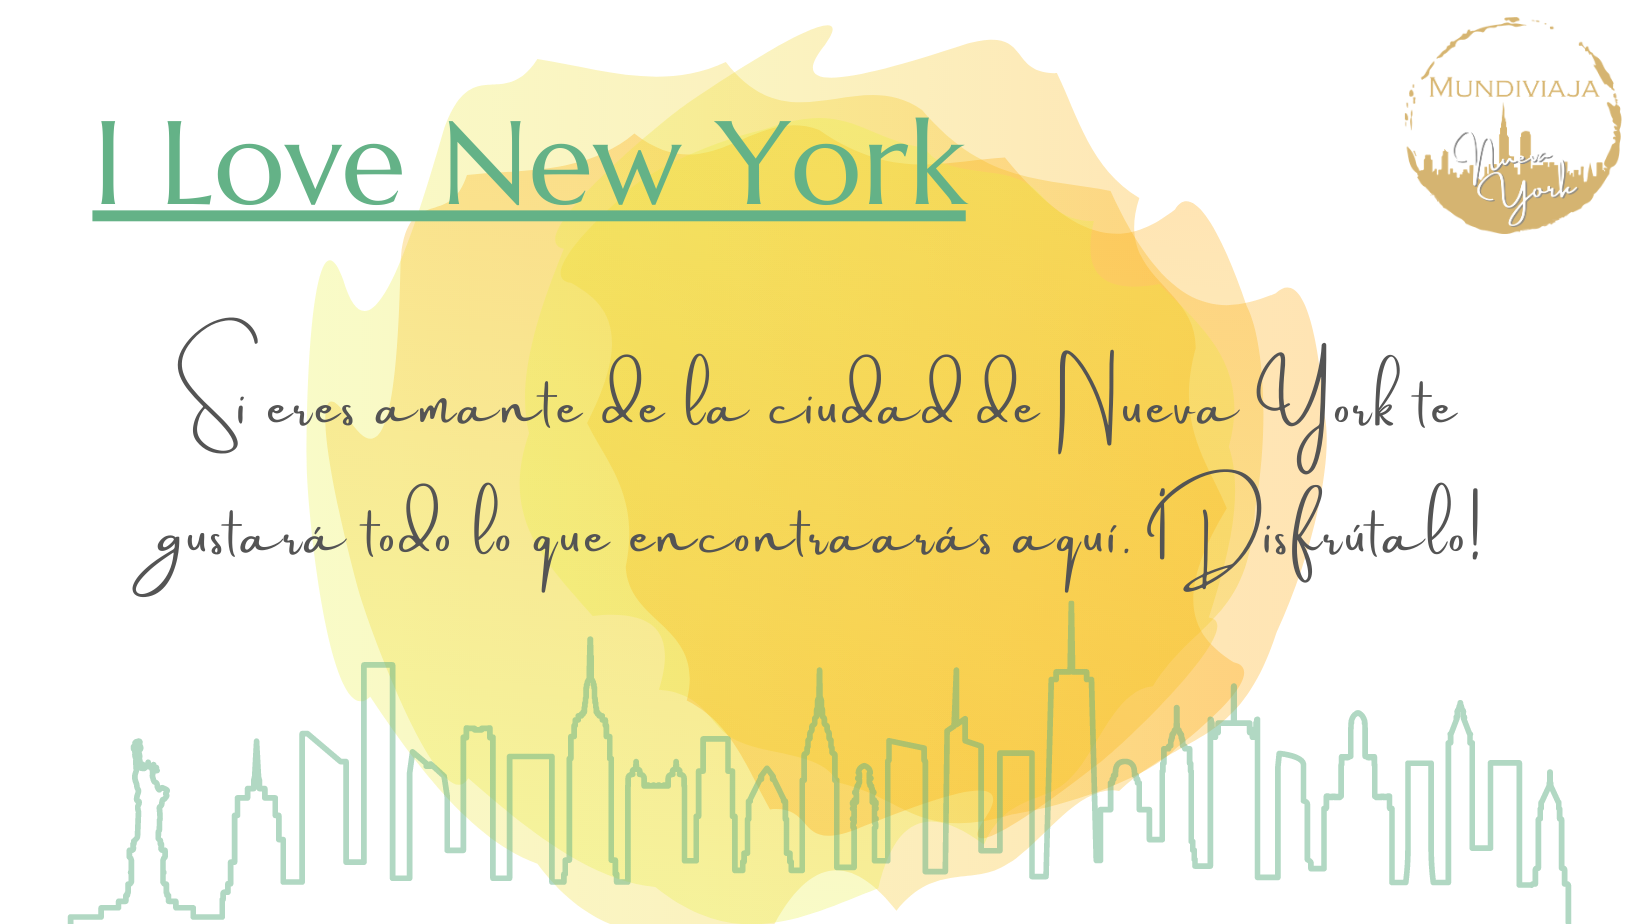  I Love New York productos exclusivos Nueva York. Mundiviaja Nueva York